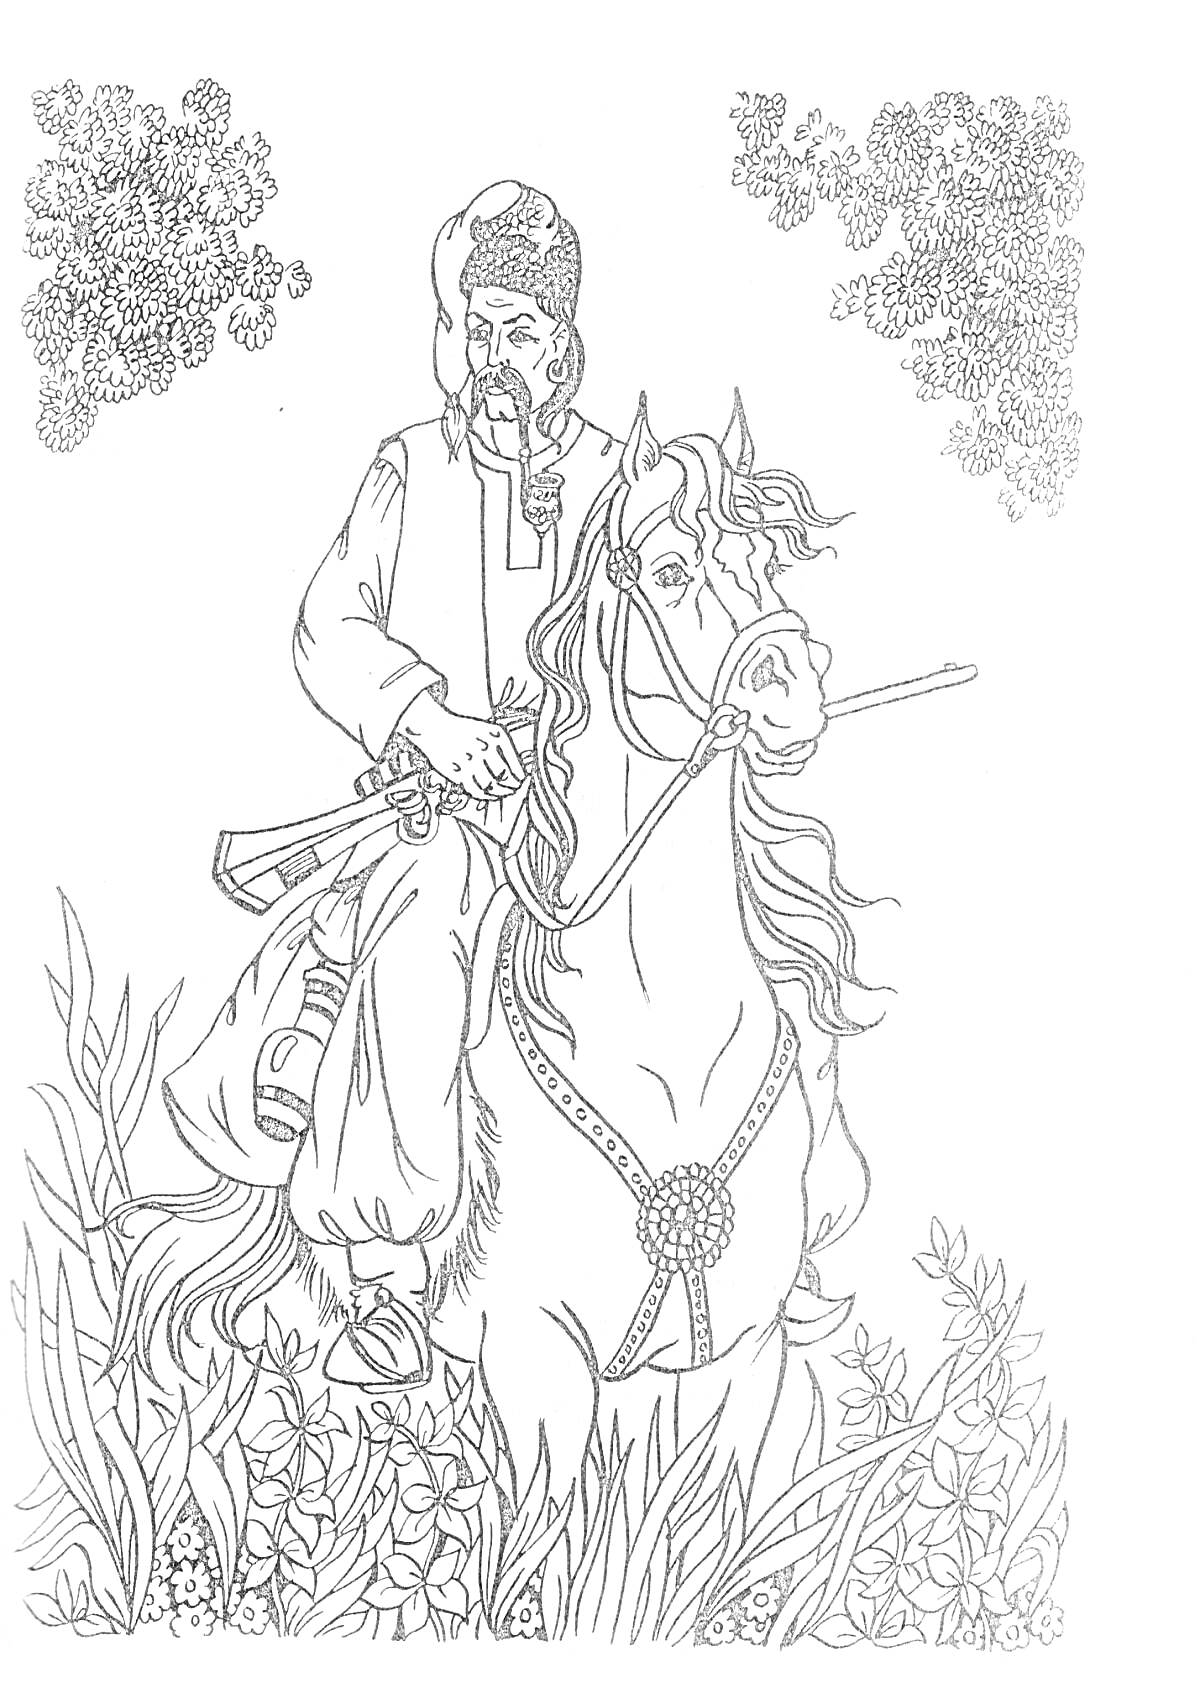 На раскраске изображено: Казак, Конь, Ружье, Растительность, Деревья, Природа, Народная одежда, Исторический персонаж